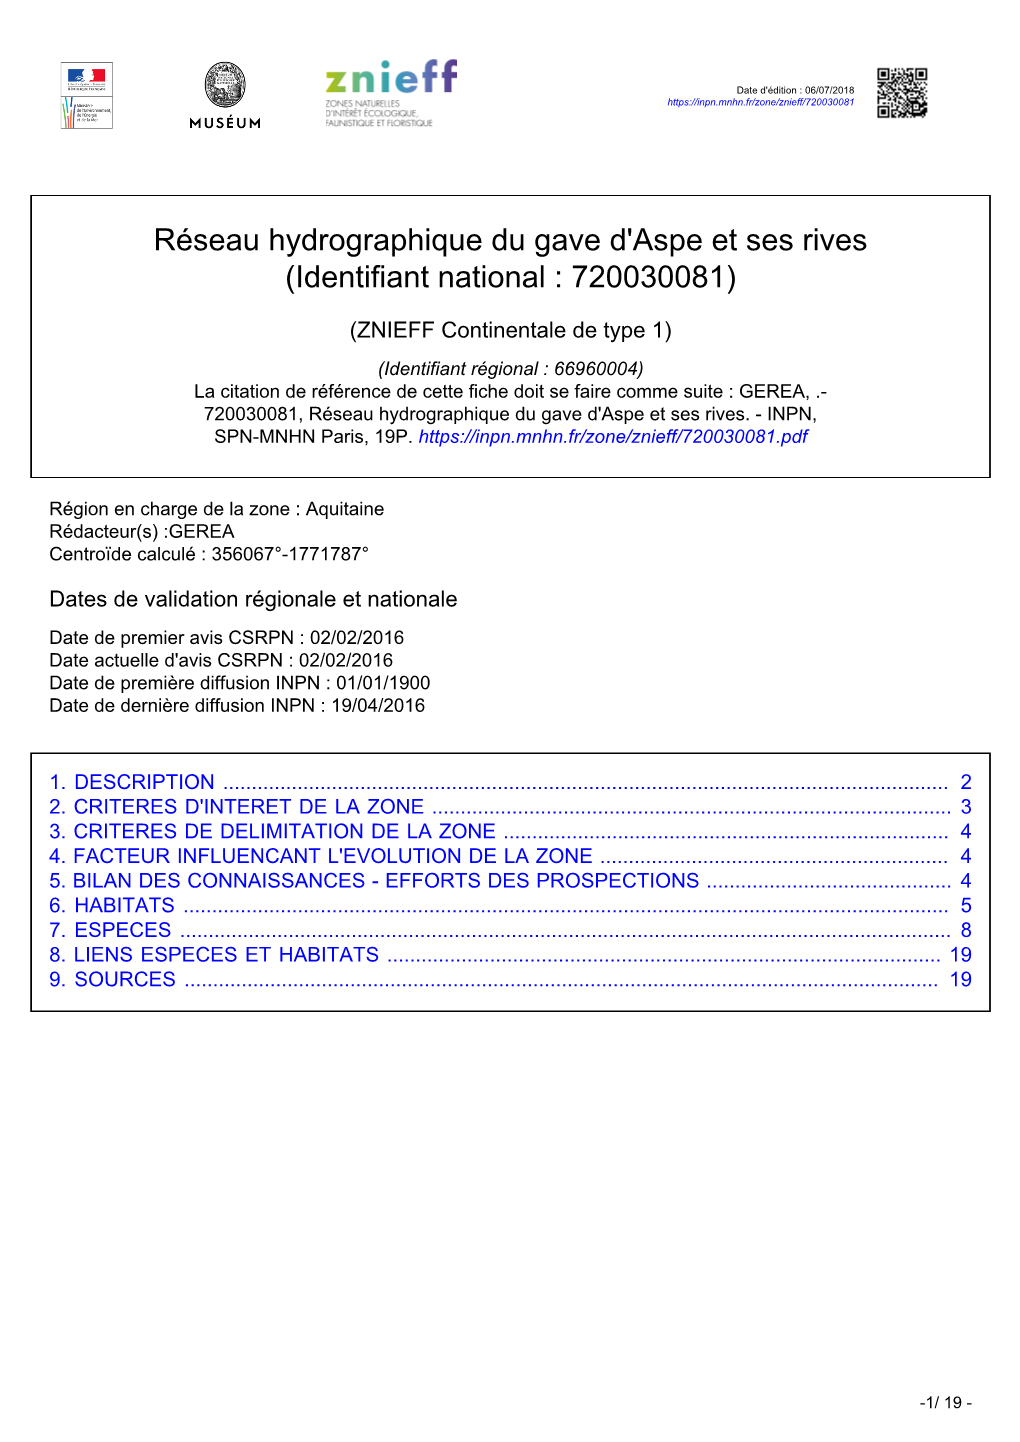 Réseau Hydrographique Du Gave D'aspe Et Ses Rives (Identifiant National : 720030081)